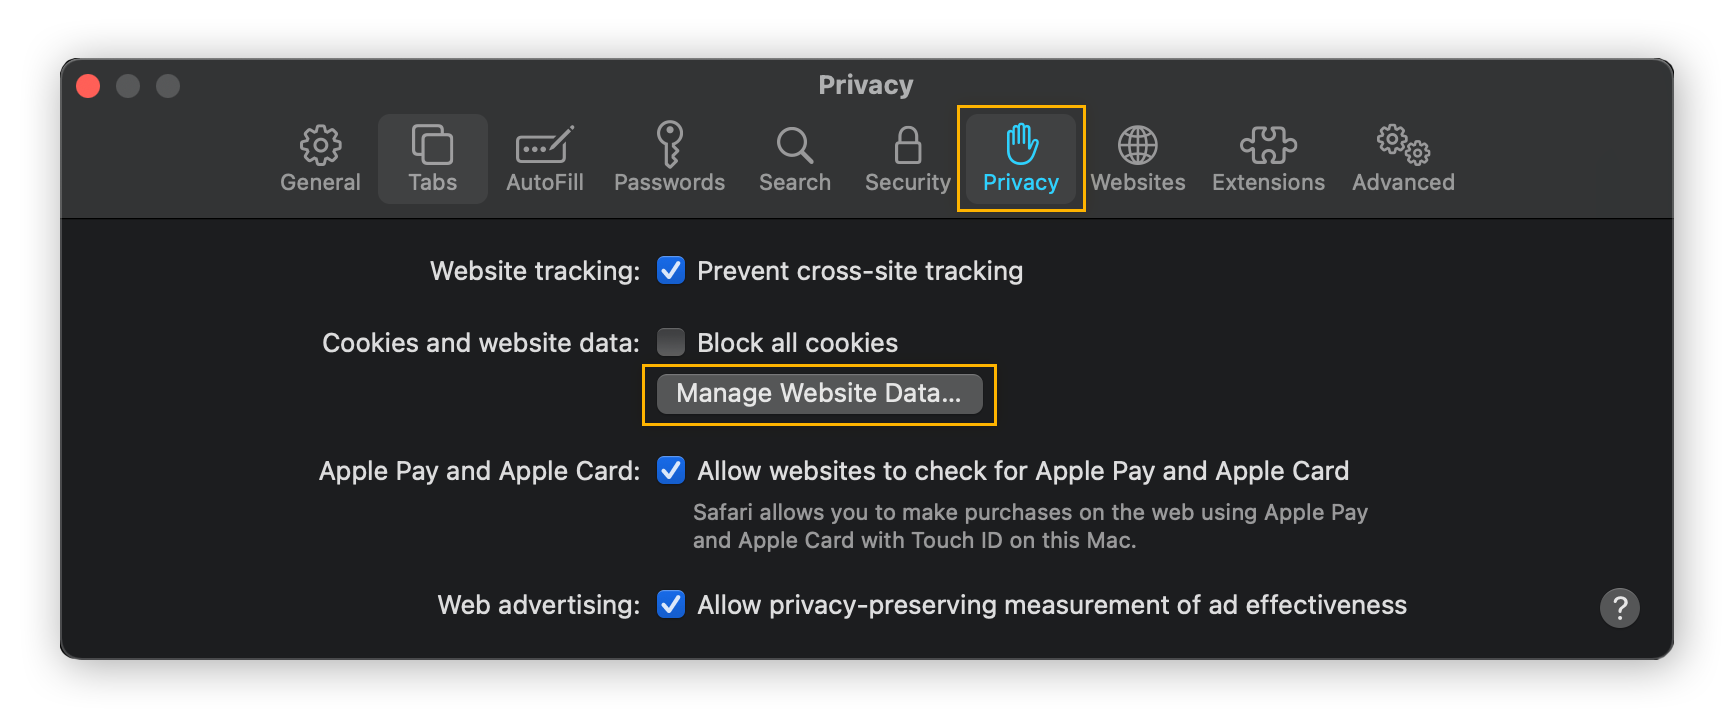 La configuración de privacidad en Safari para macOS